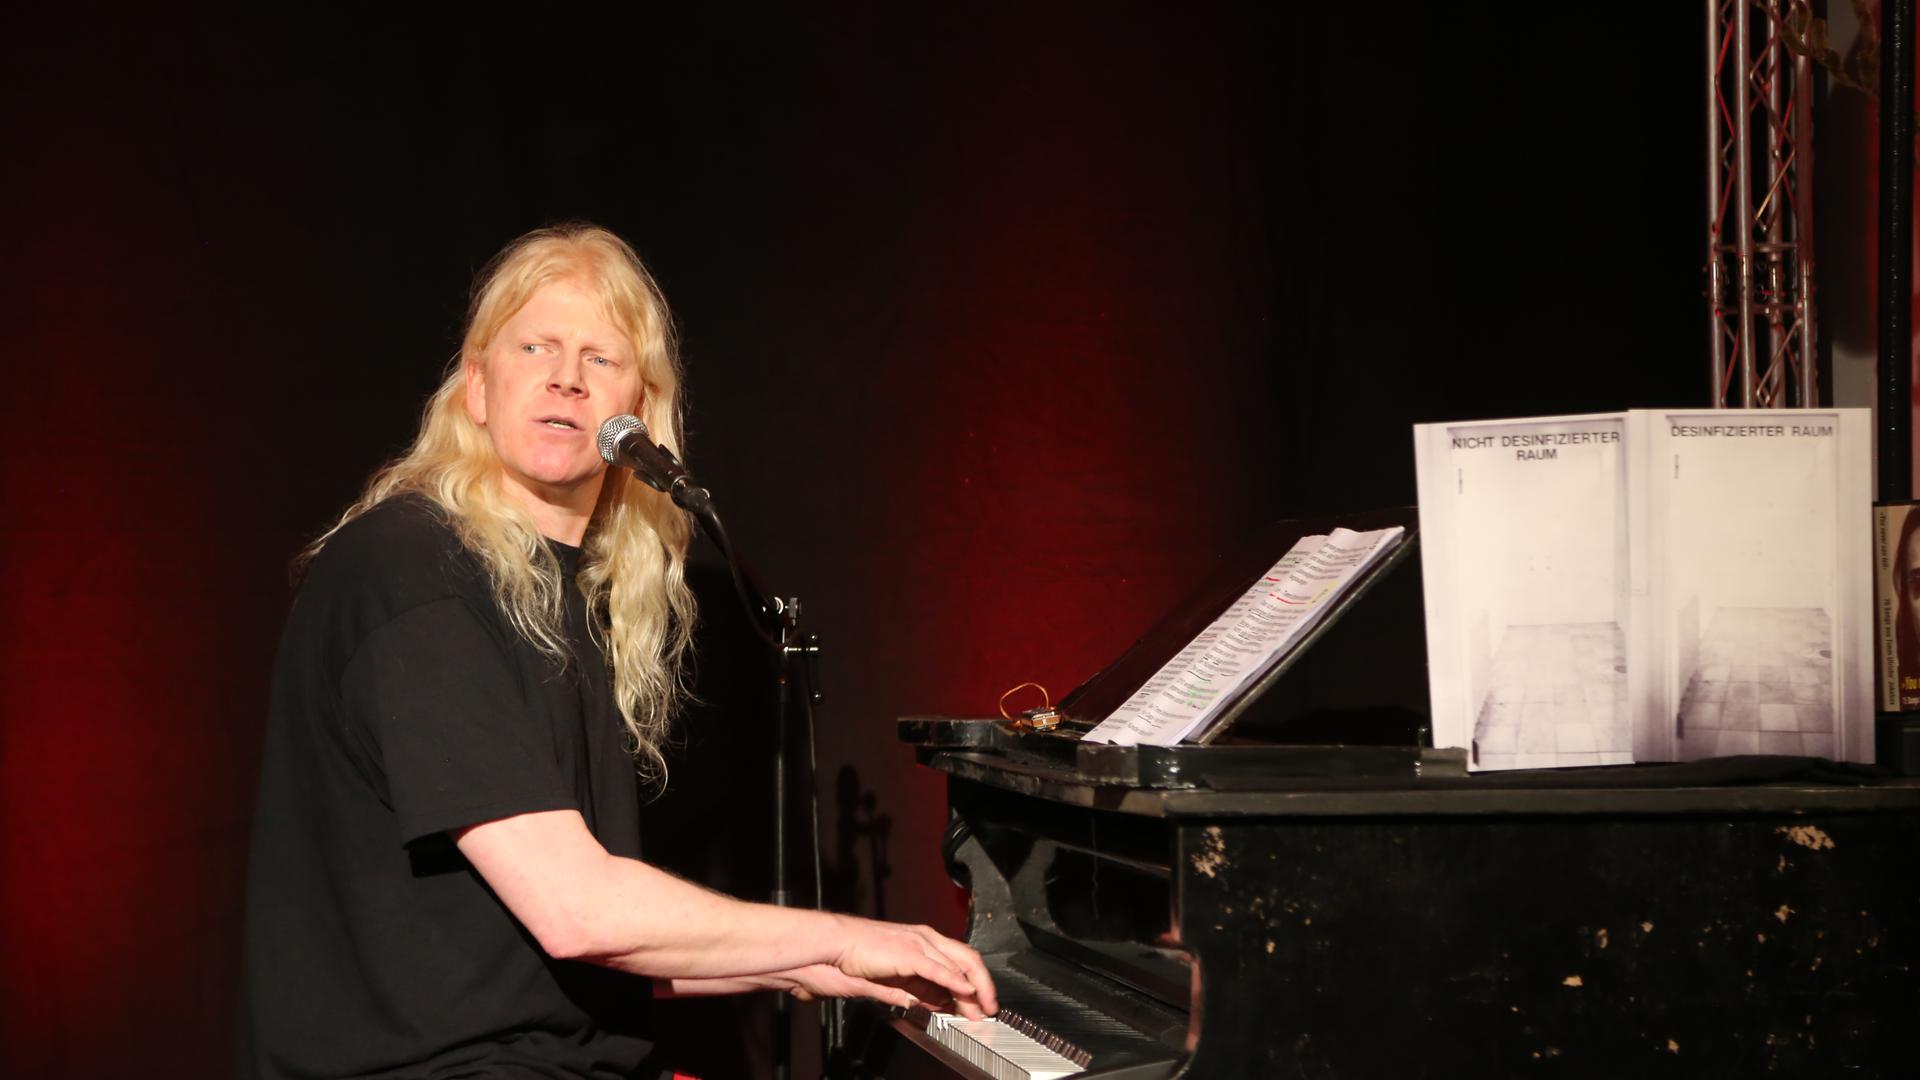 Der Mann am Klavier ist Musiker, Kabarettist, Puppenspieler und mittlerweile sogar professioneller Bühnenpyrotechniker: Gunzi Heil. Das Foto entstand am 6. März 2020 kurz vor dem ersten Lockdown bei der Eröffnung einer Ausstellung von Timm Ulrichs in Berlin. 